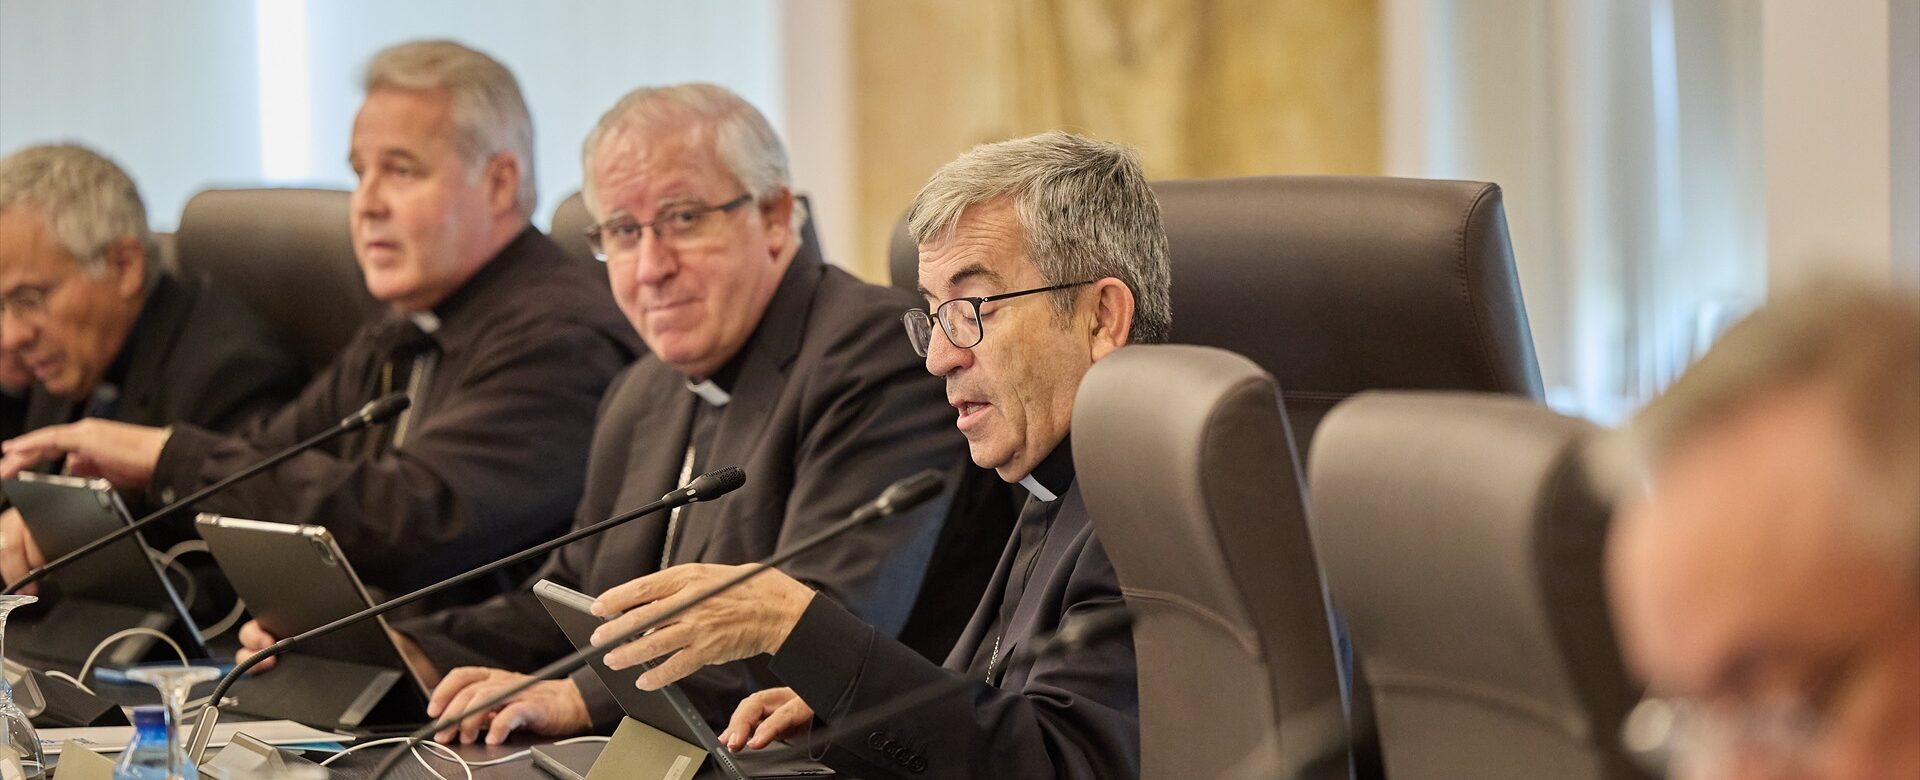 Los obispos hacen suyo el argumentario de PP y VOX en contra de la amnistía